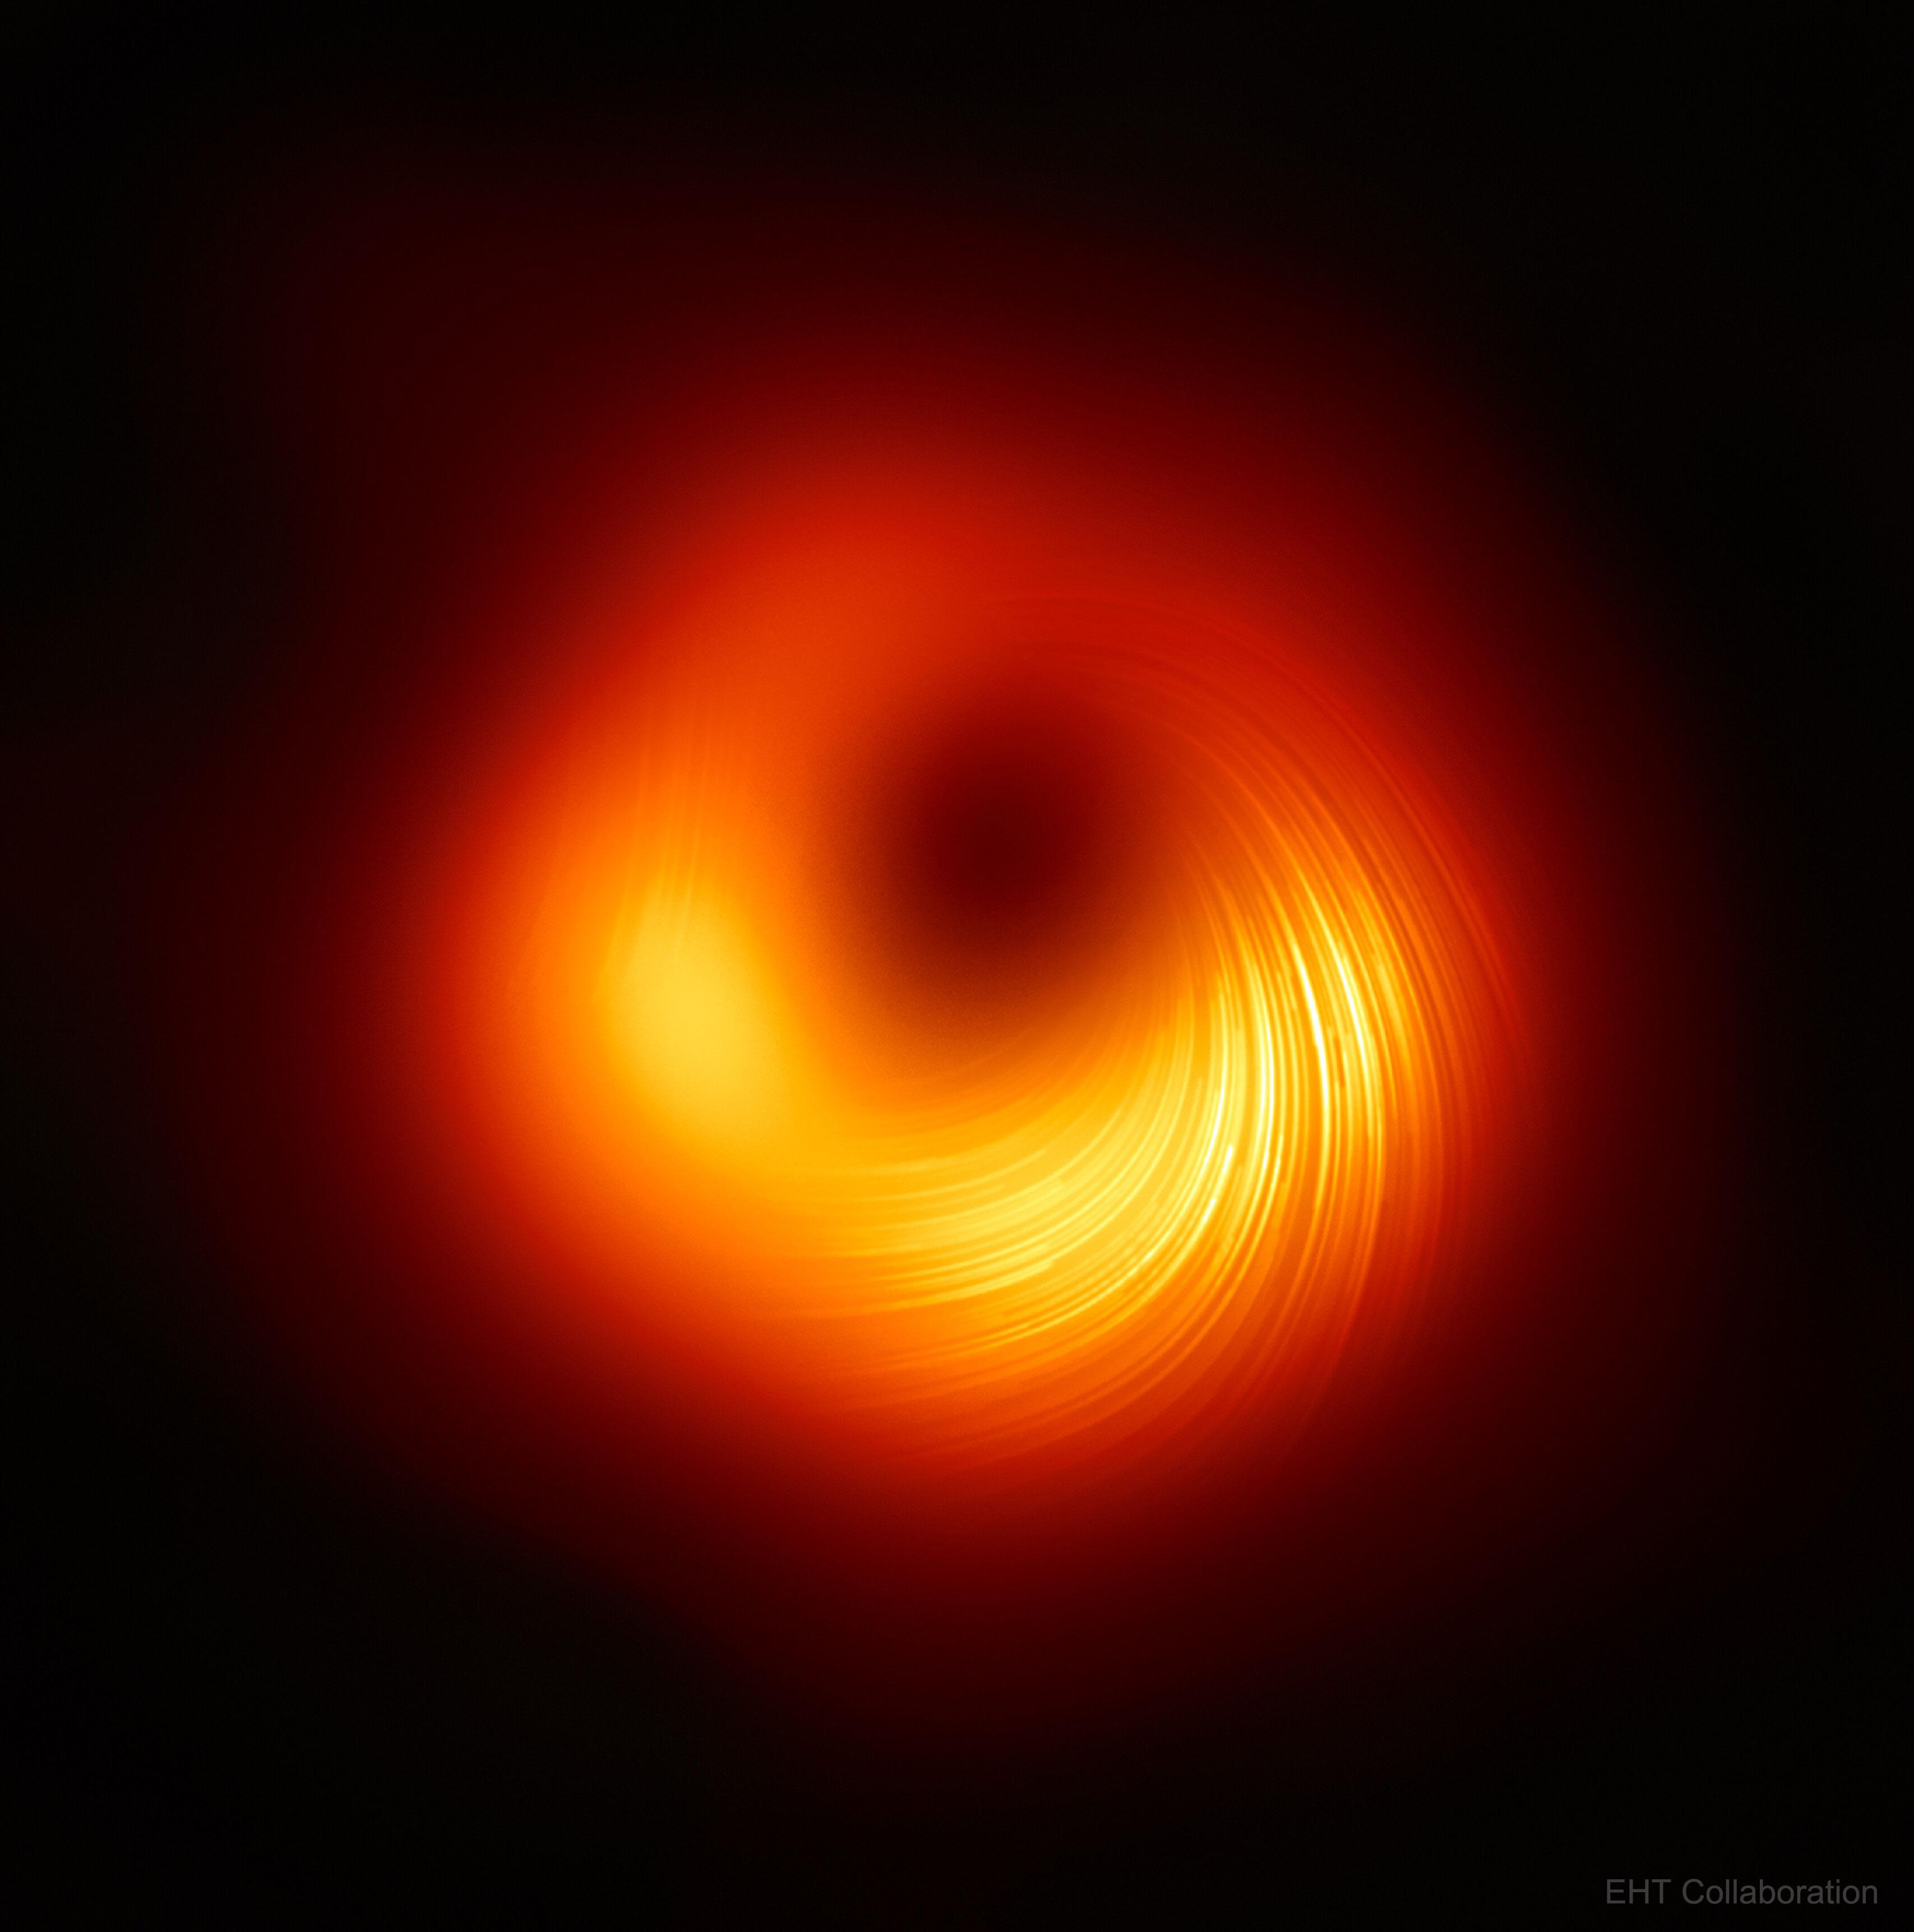 صورة للثقب الأسود في سماء سوداء، تظهر حلقة مضيئة محزّزة ذات ألوان متدرّجة بين الأصفر والأحمر تدور حول مركز مظلم.